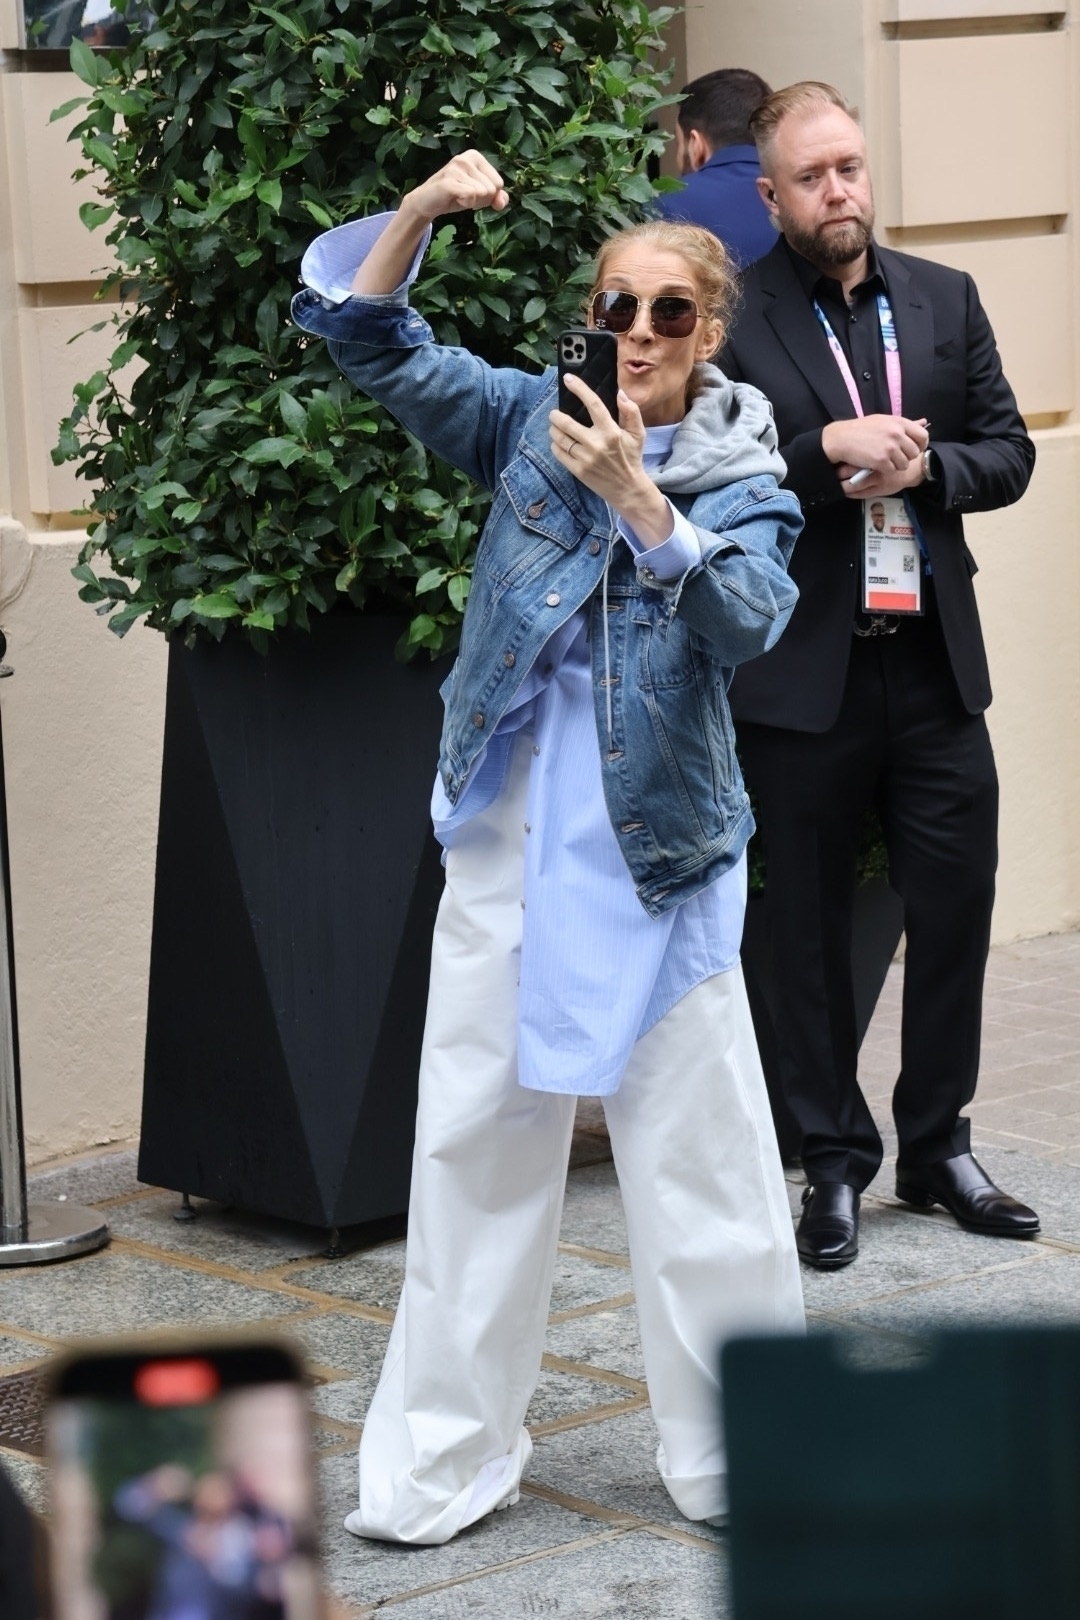 Antes de dirigirse a la ceremonia, Celine Dion se tomó fotografías con los fanáticos y recibió vítores de la multitud afuera de su habitación de hotel.